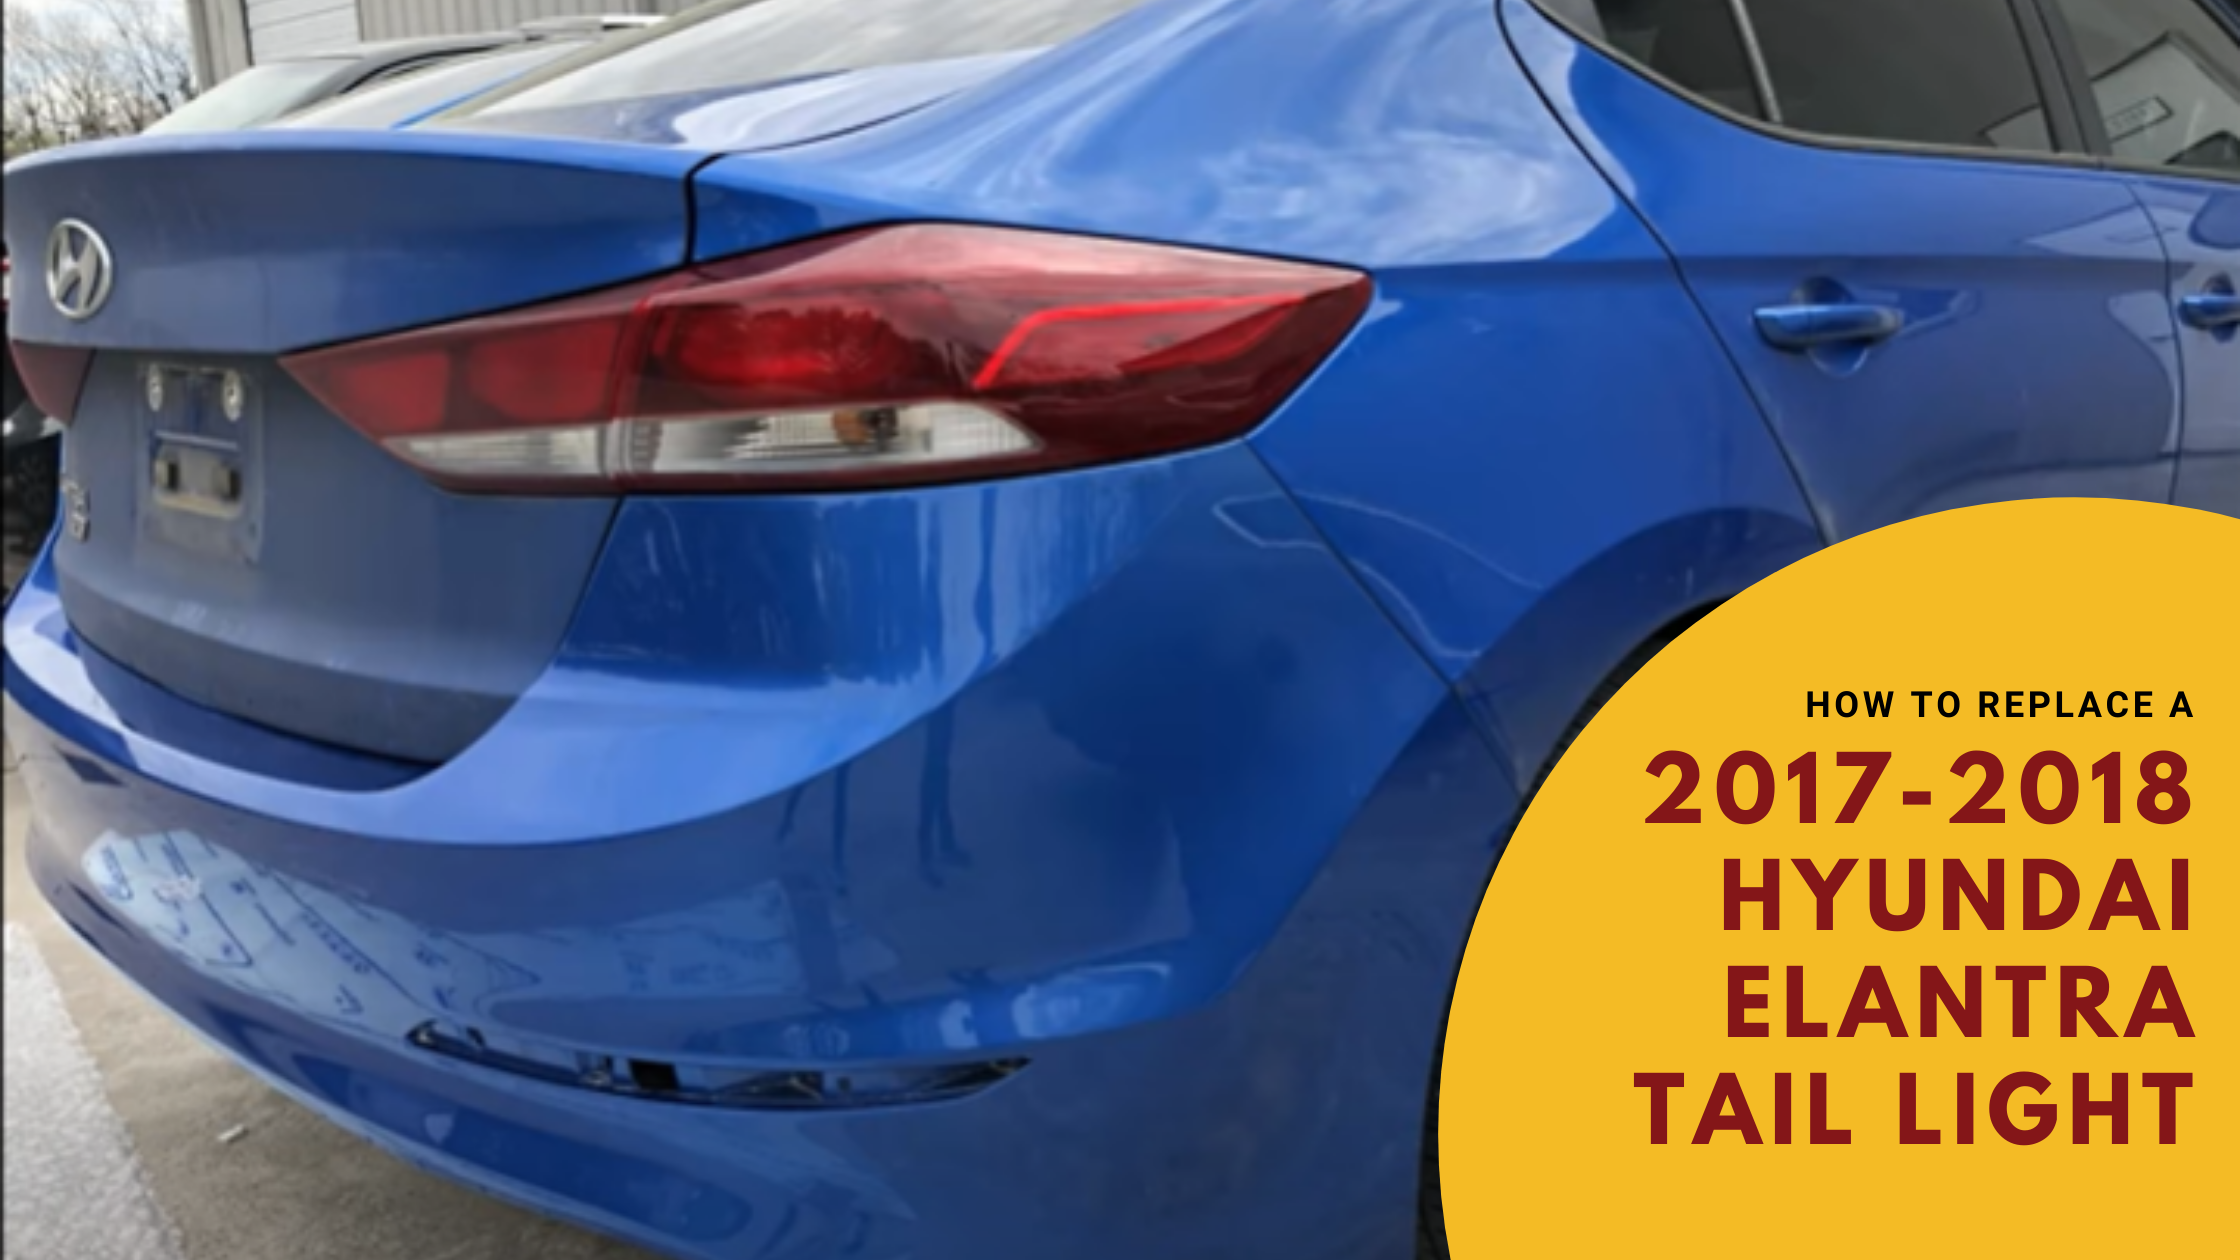 How To Replace a 2017-2018 Hyundai Elantra Tail Light